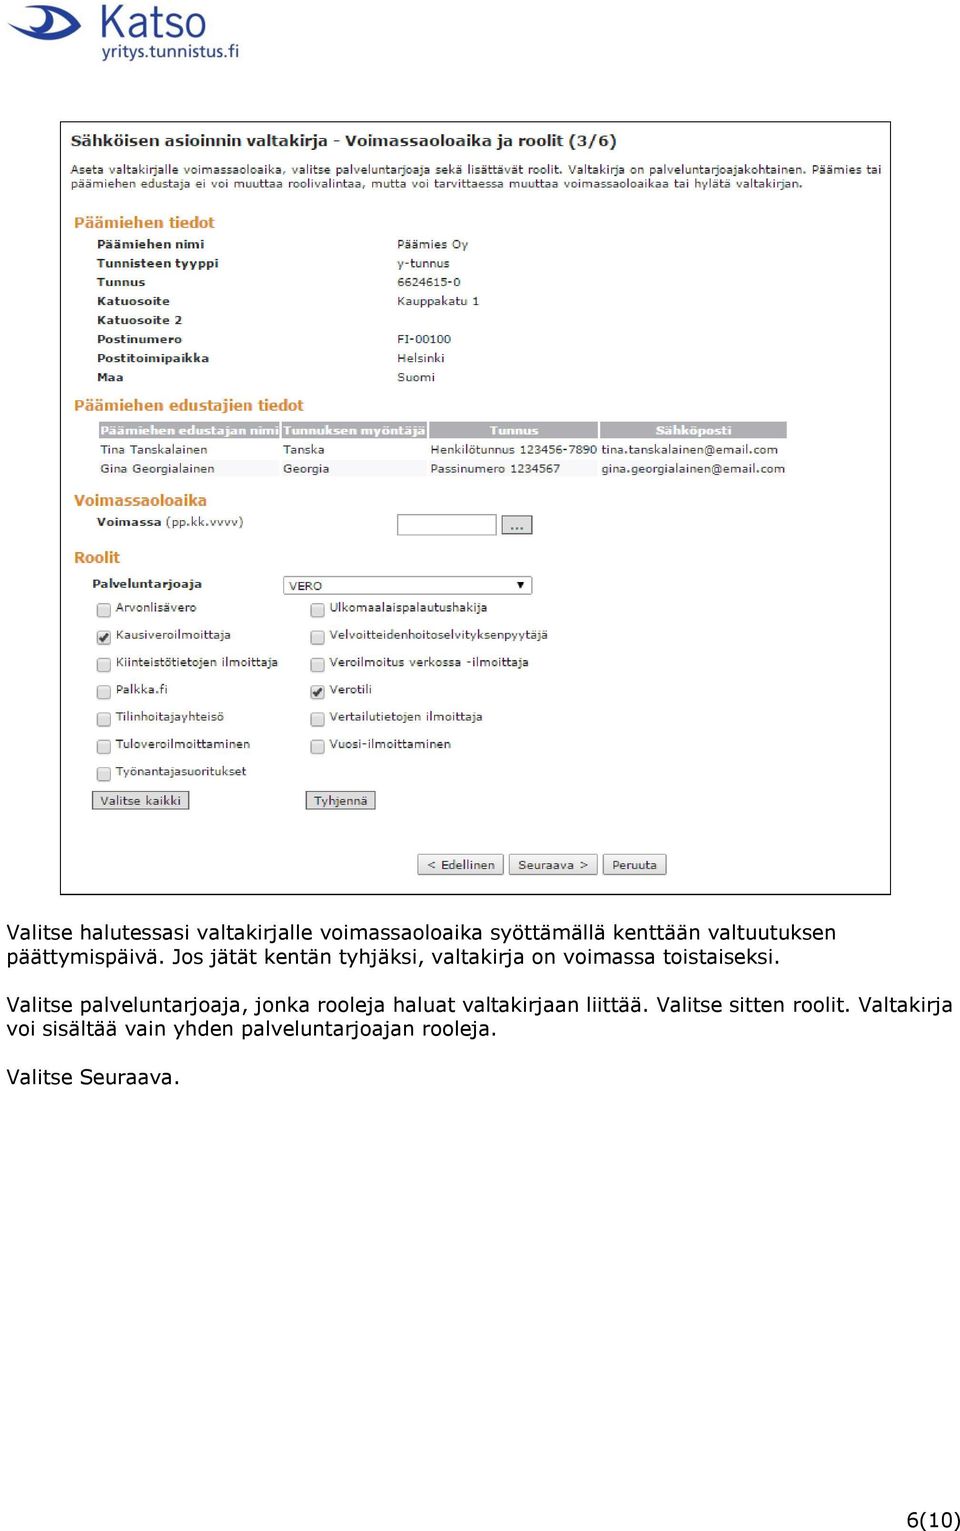 Sähköisen asioinnin valtakirjan luominen päämiehen ulkomaiselle edustajalle  - PDF Ilmainen lataus